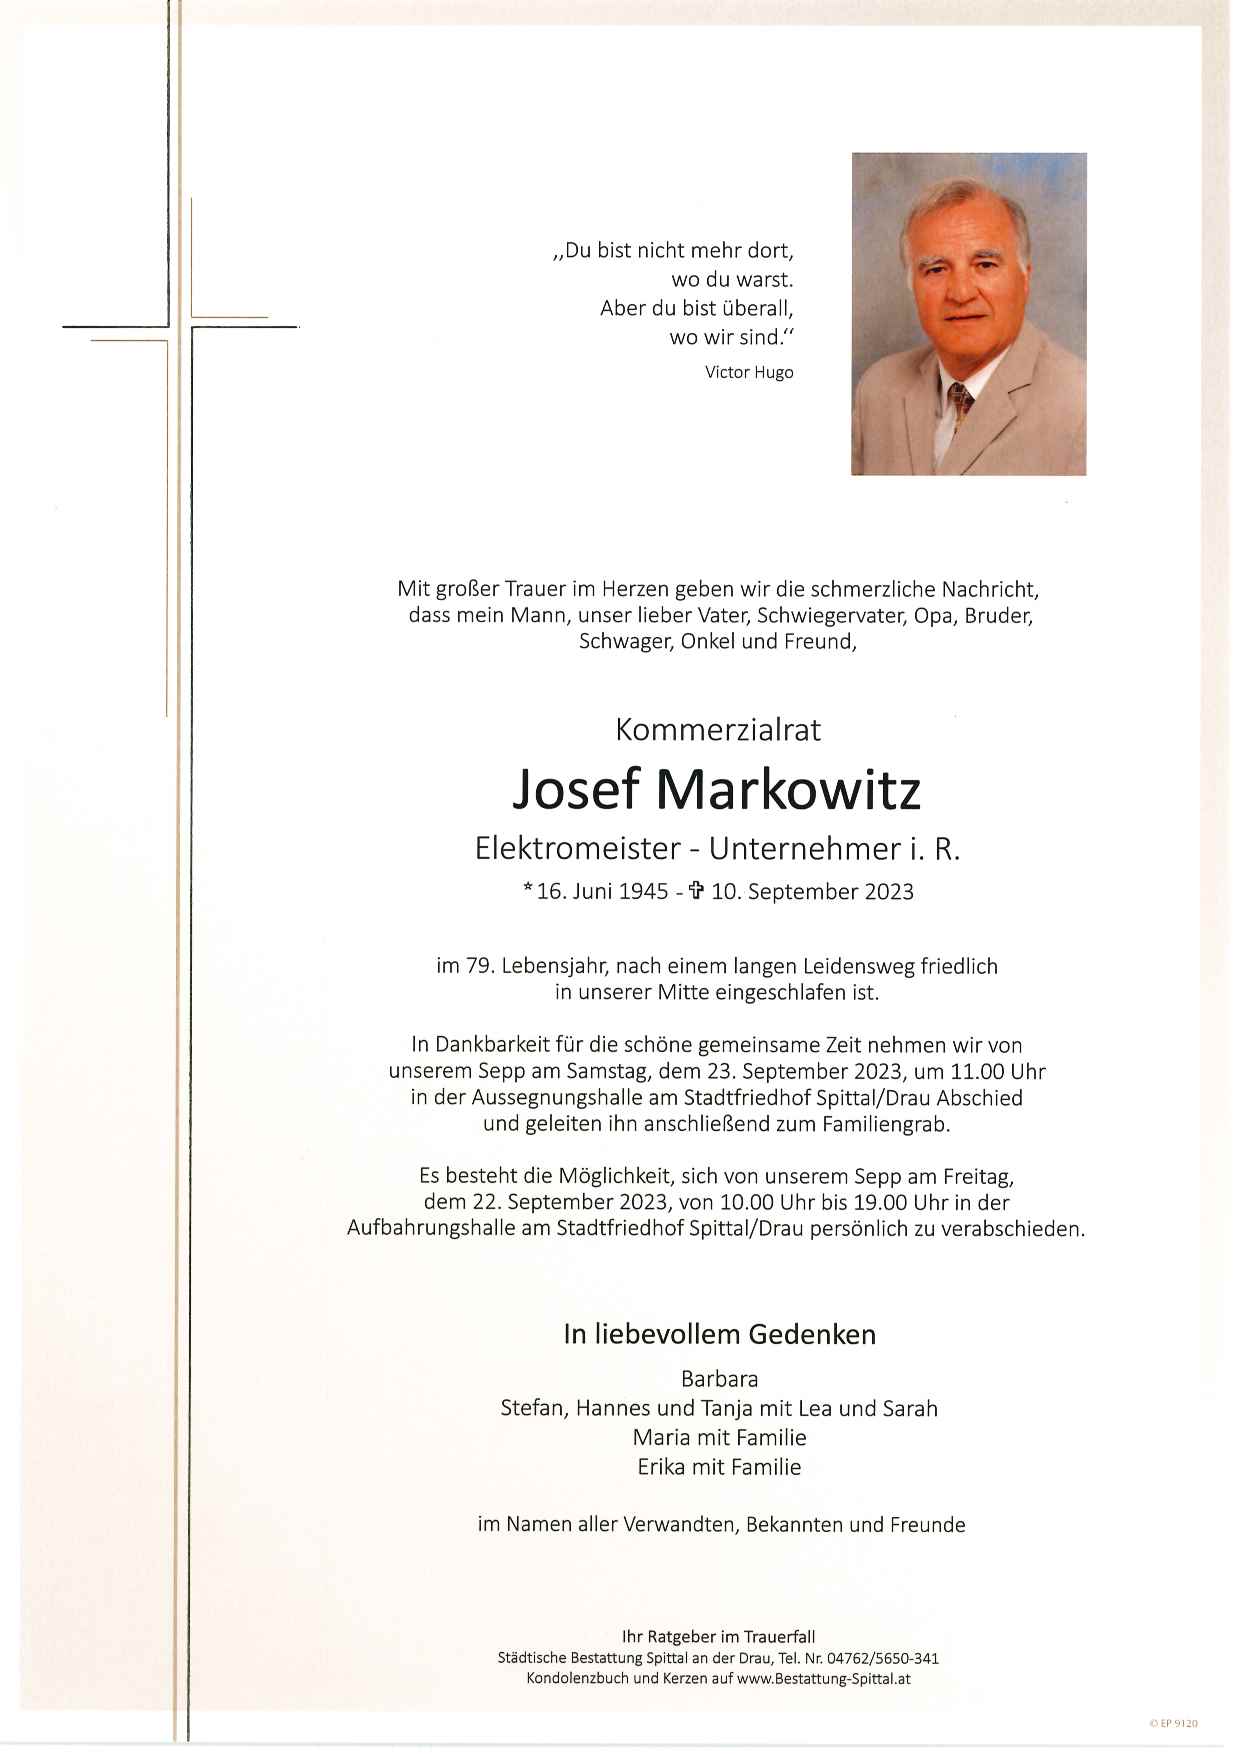 Josef Markowitz